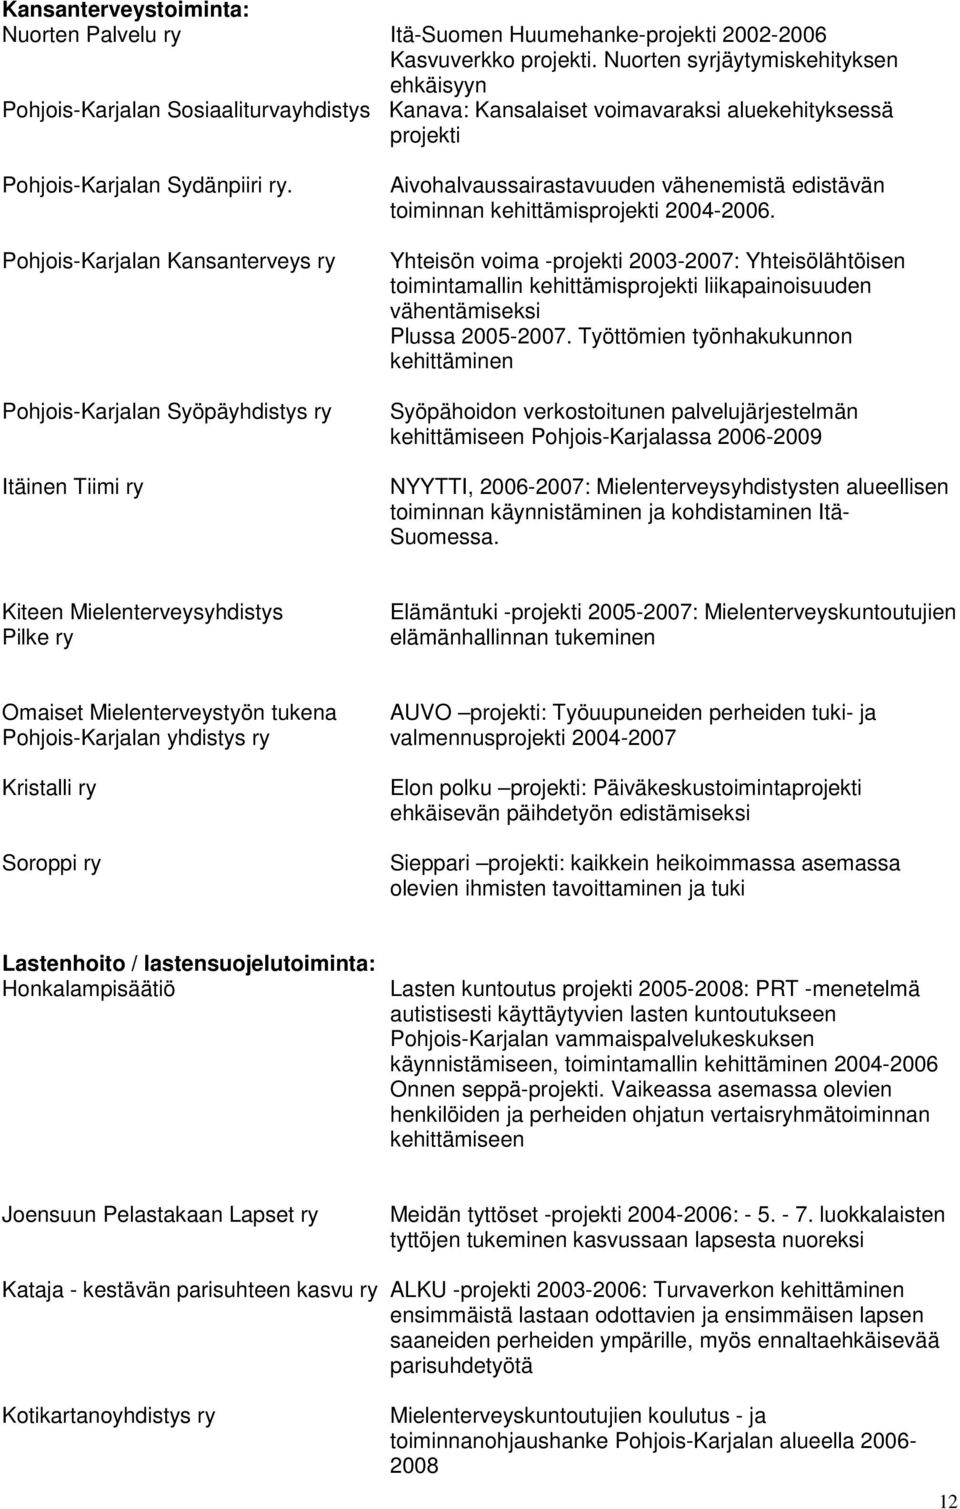 Pohjois-Karjalan Kansanterveys ry Pohjois-Karjalan Syöpäyhdistys ry Itäinen Tiimi ry Aivohalvaussairastavuuden vähenemistä edistävän toiminnan kehittämisprojekti 2004-2006.